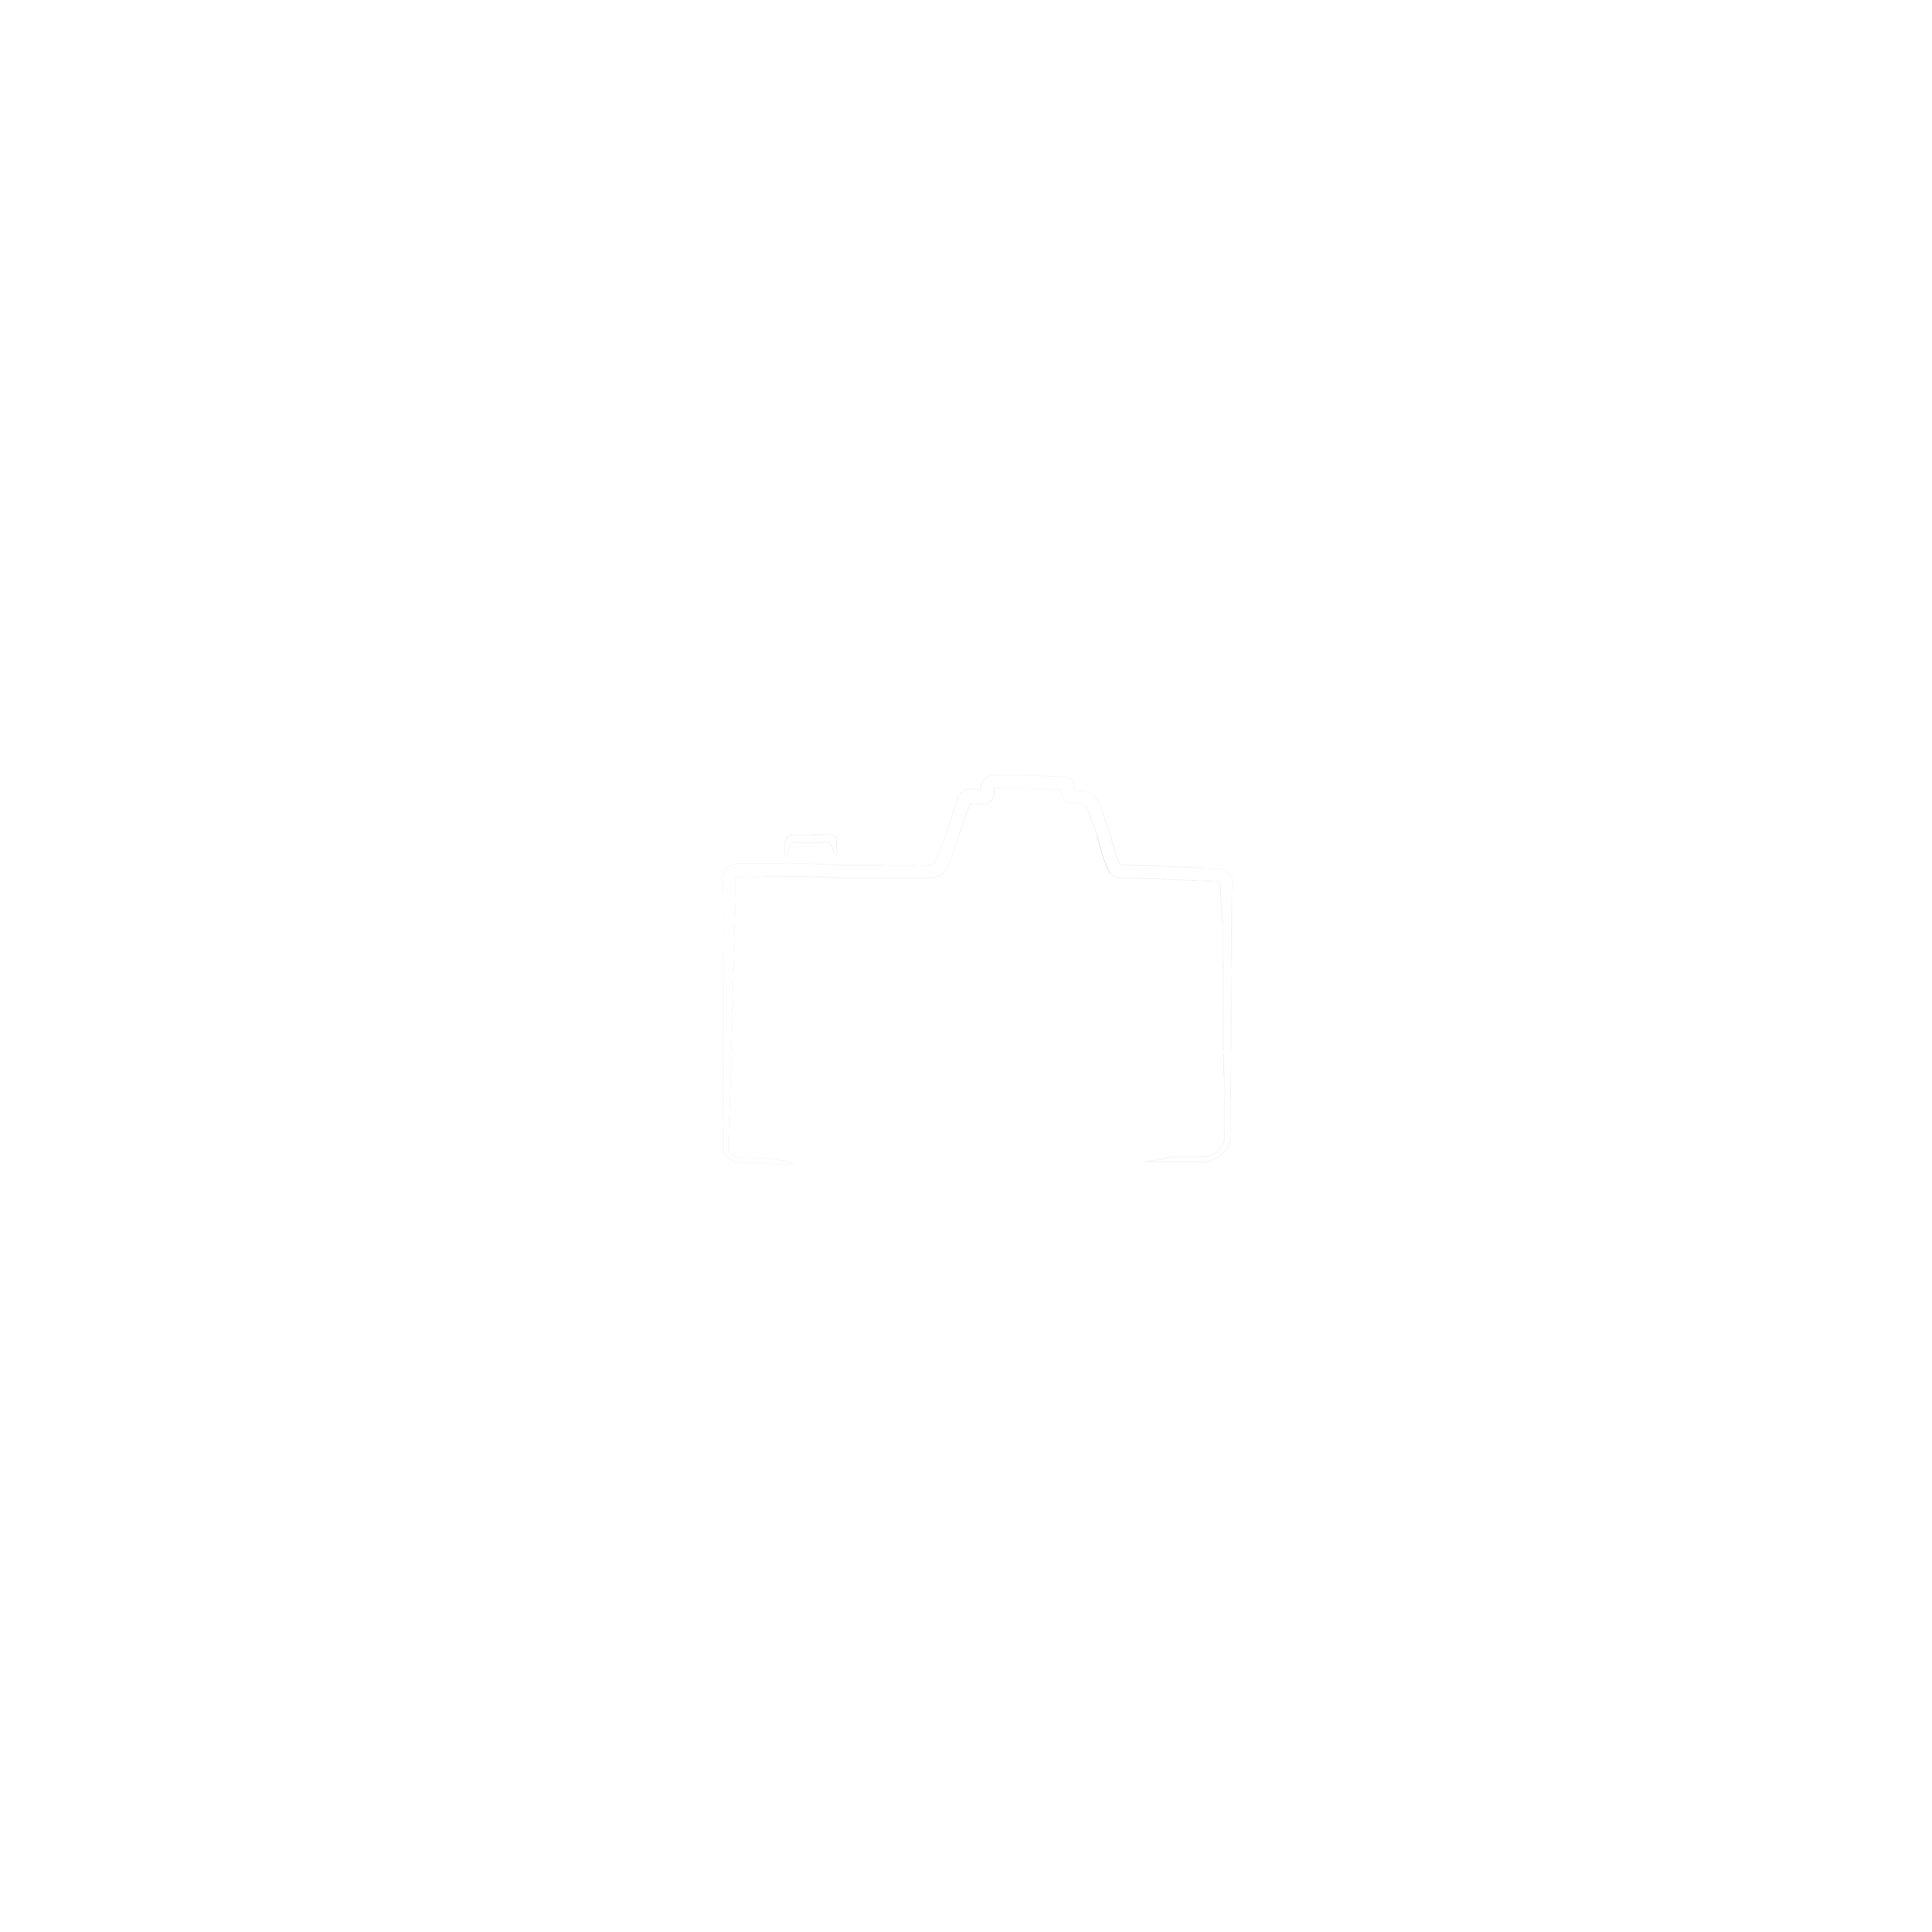 Cap2red Studio